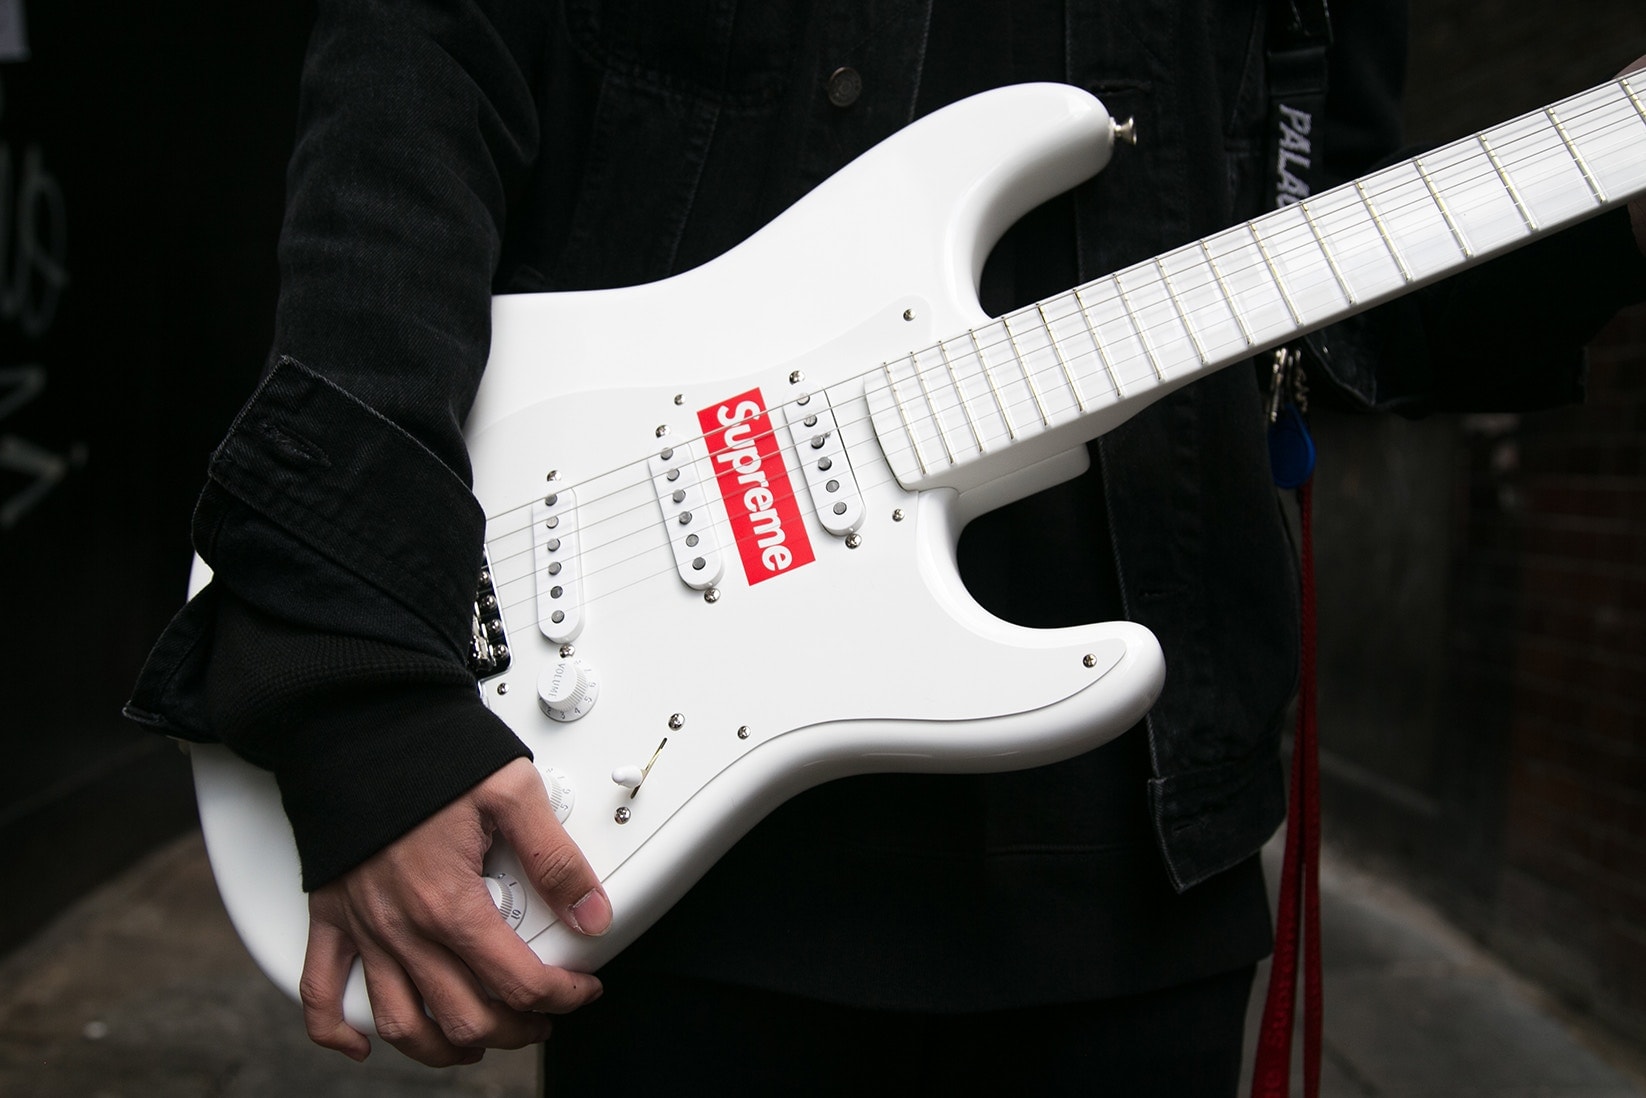 直擊 Supreme x Fender Stratocaster 聯名吉他倫敦發售現場